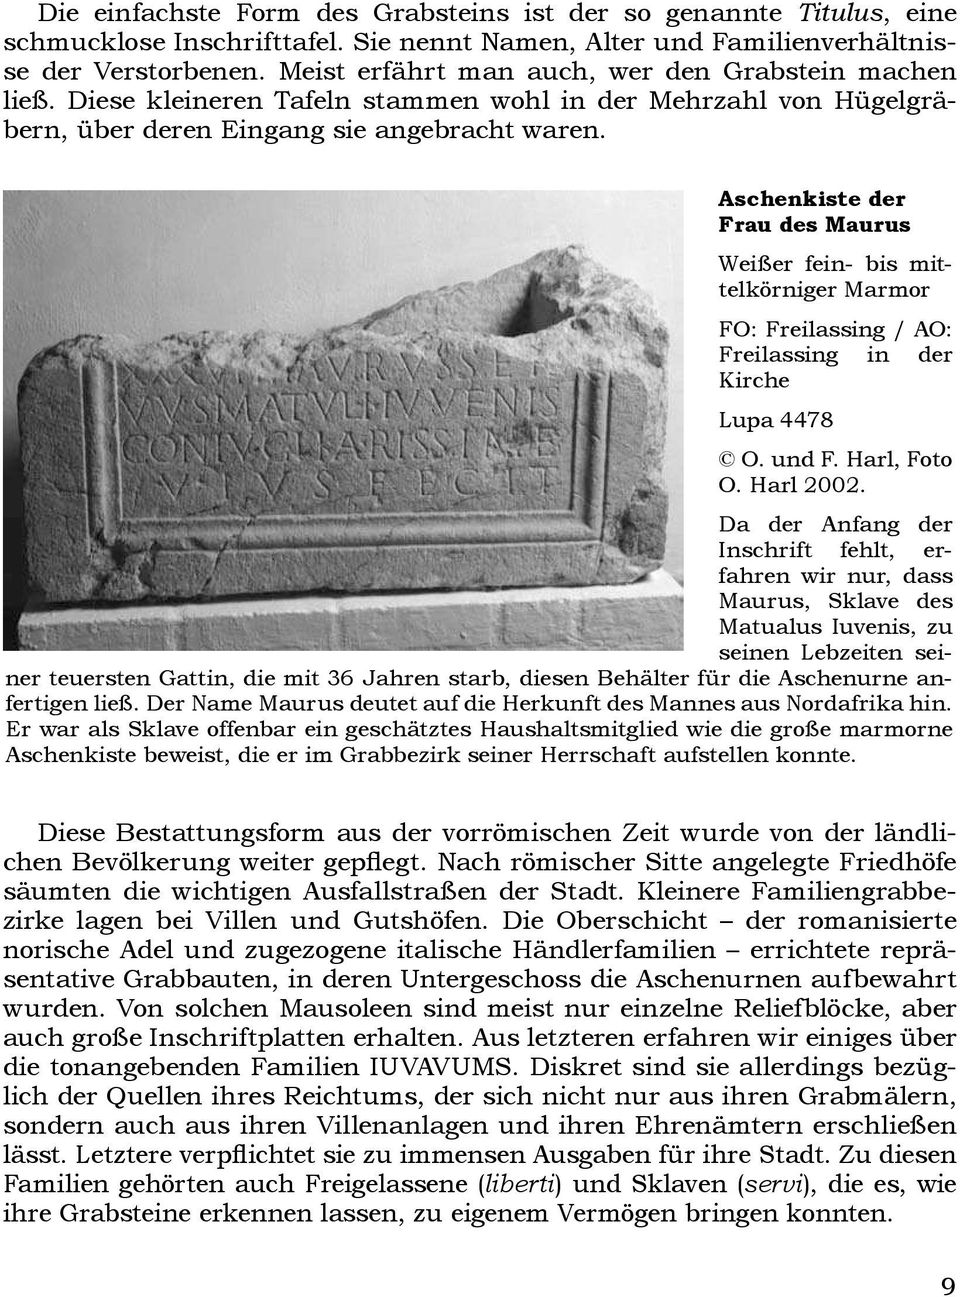 Aschenkiste der Frau des Maurus Weißer fein- bis mittelkörniger Marmor FO: Freilassing / AO: Freilassing in der Kirche Lupa 4478 O. und F. Harl, Foto O. Harl 2002.